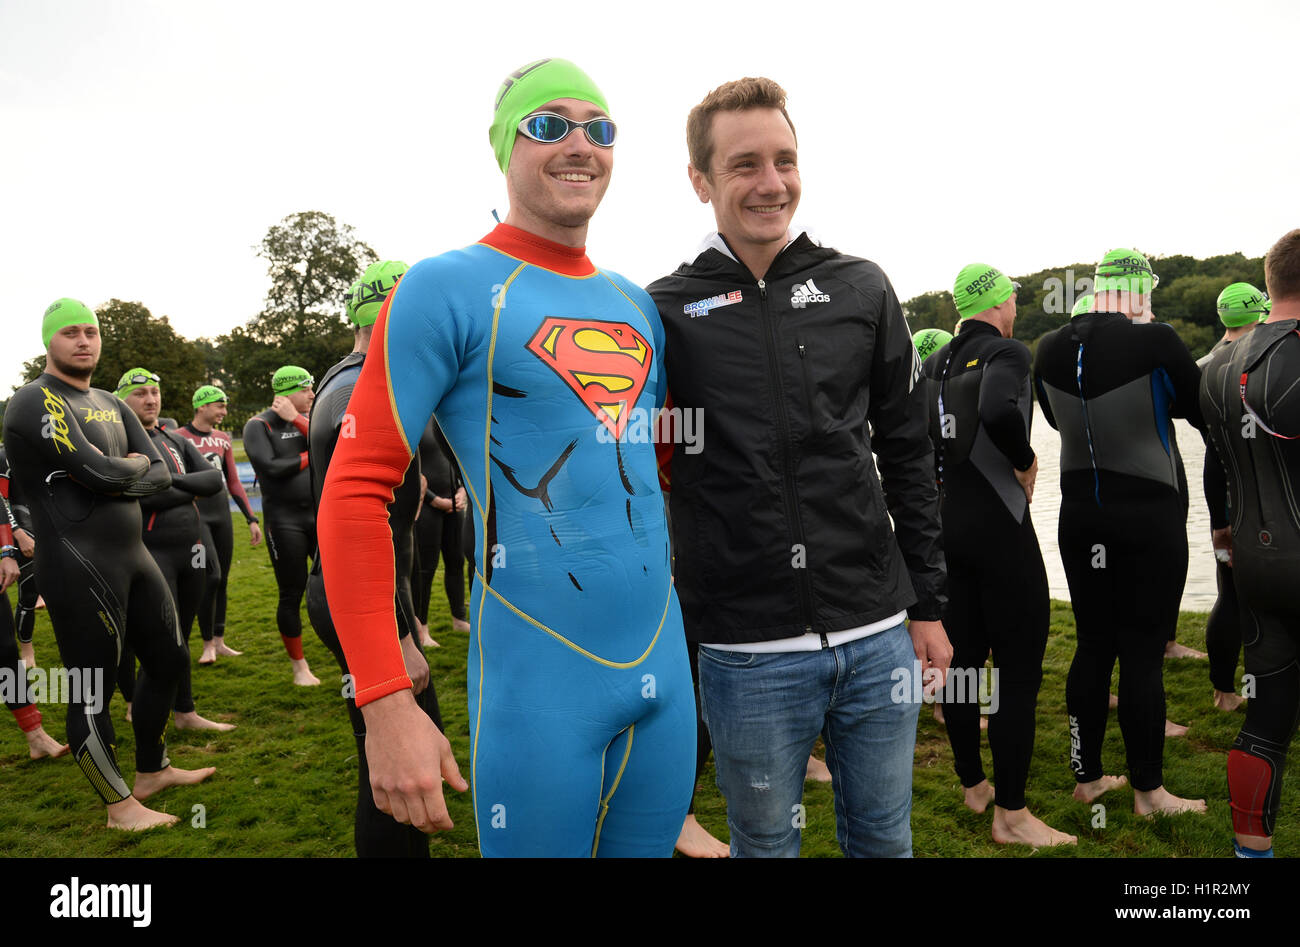 Alistair Brownlee trifft Konkurrent, die George Moffatt aus Wensleydale  Surfanzug Superman vor dem Schwimmen während der Brownlee-Triathlon in  Harewood House, Leeds gekleidet Stockfotografie - Alamy